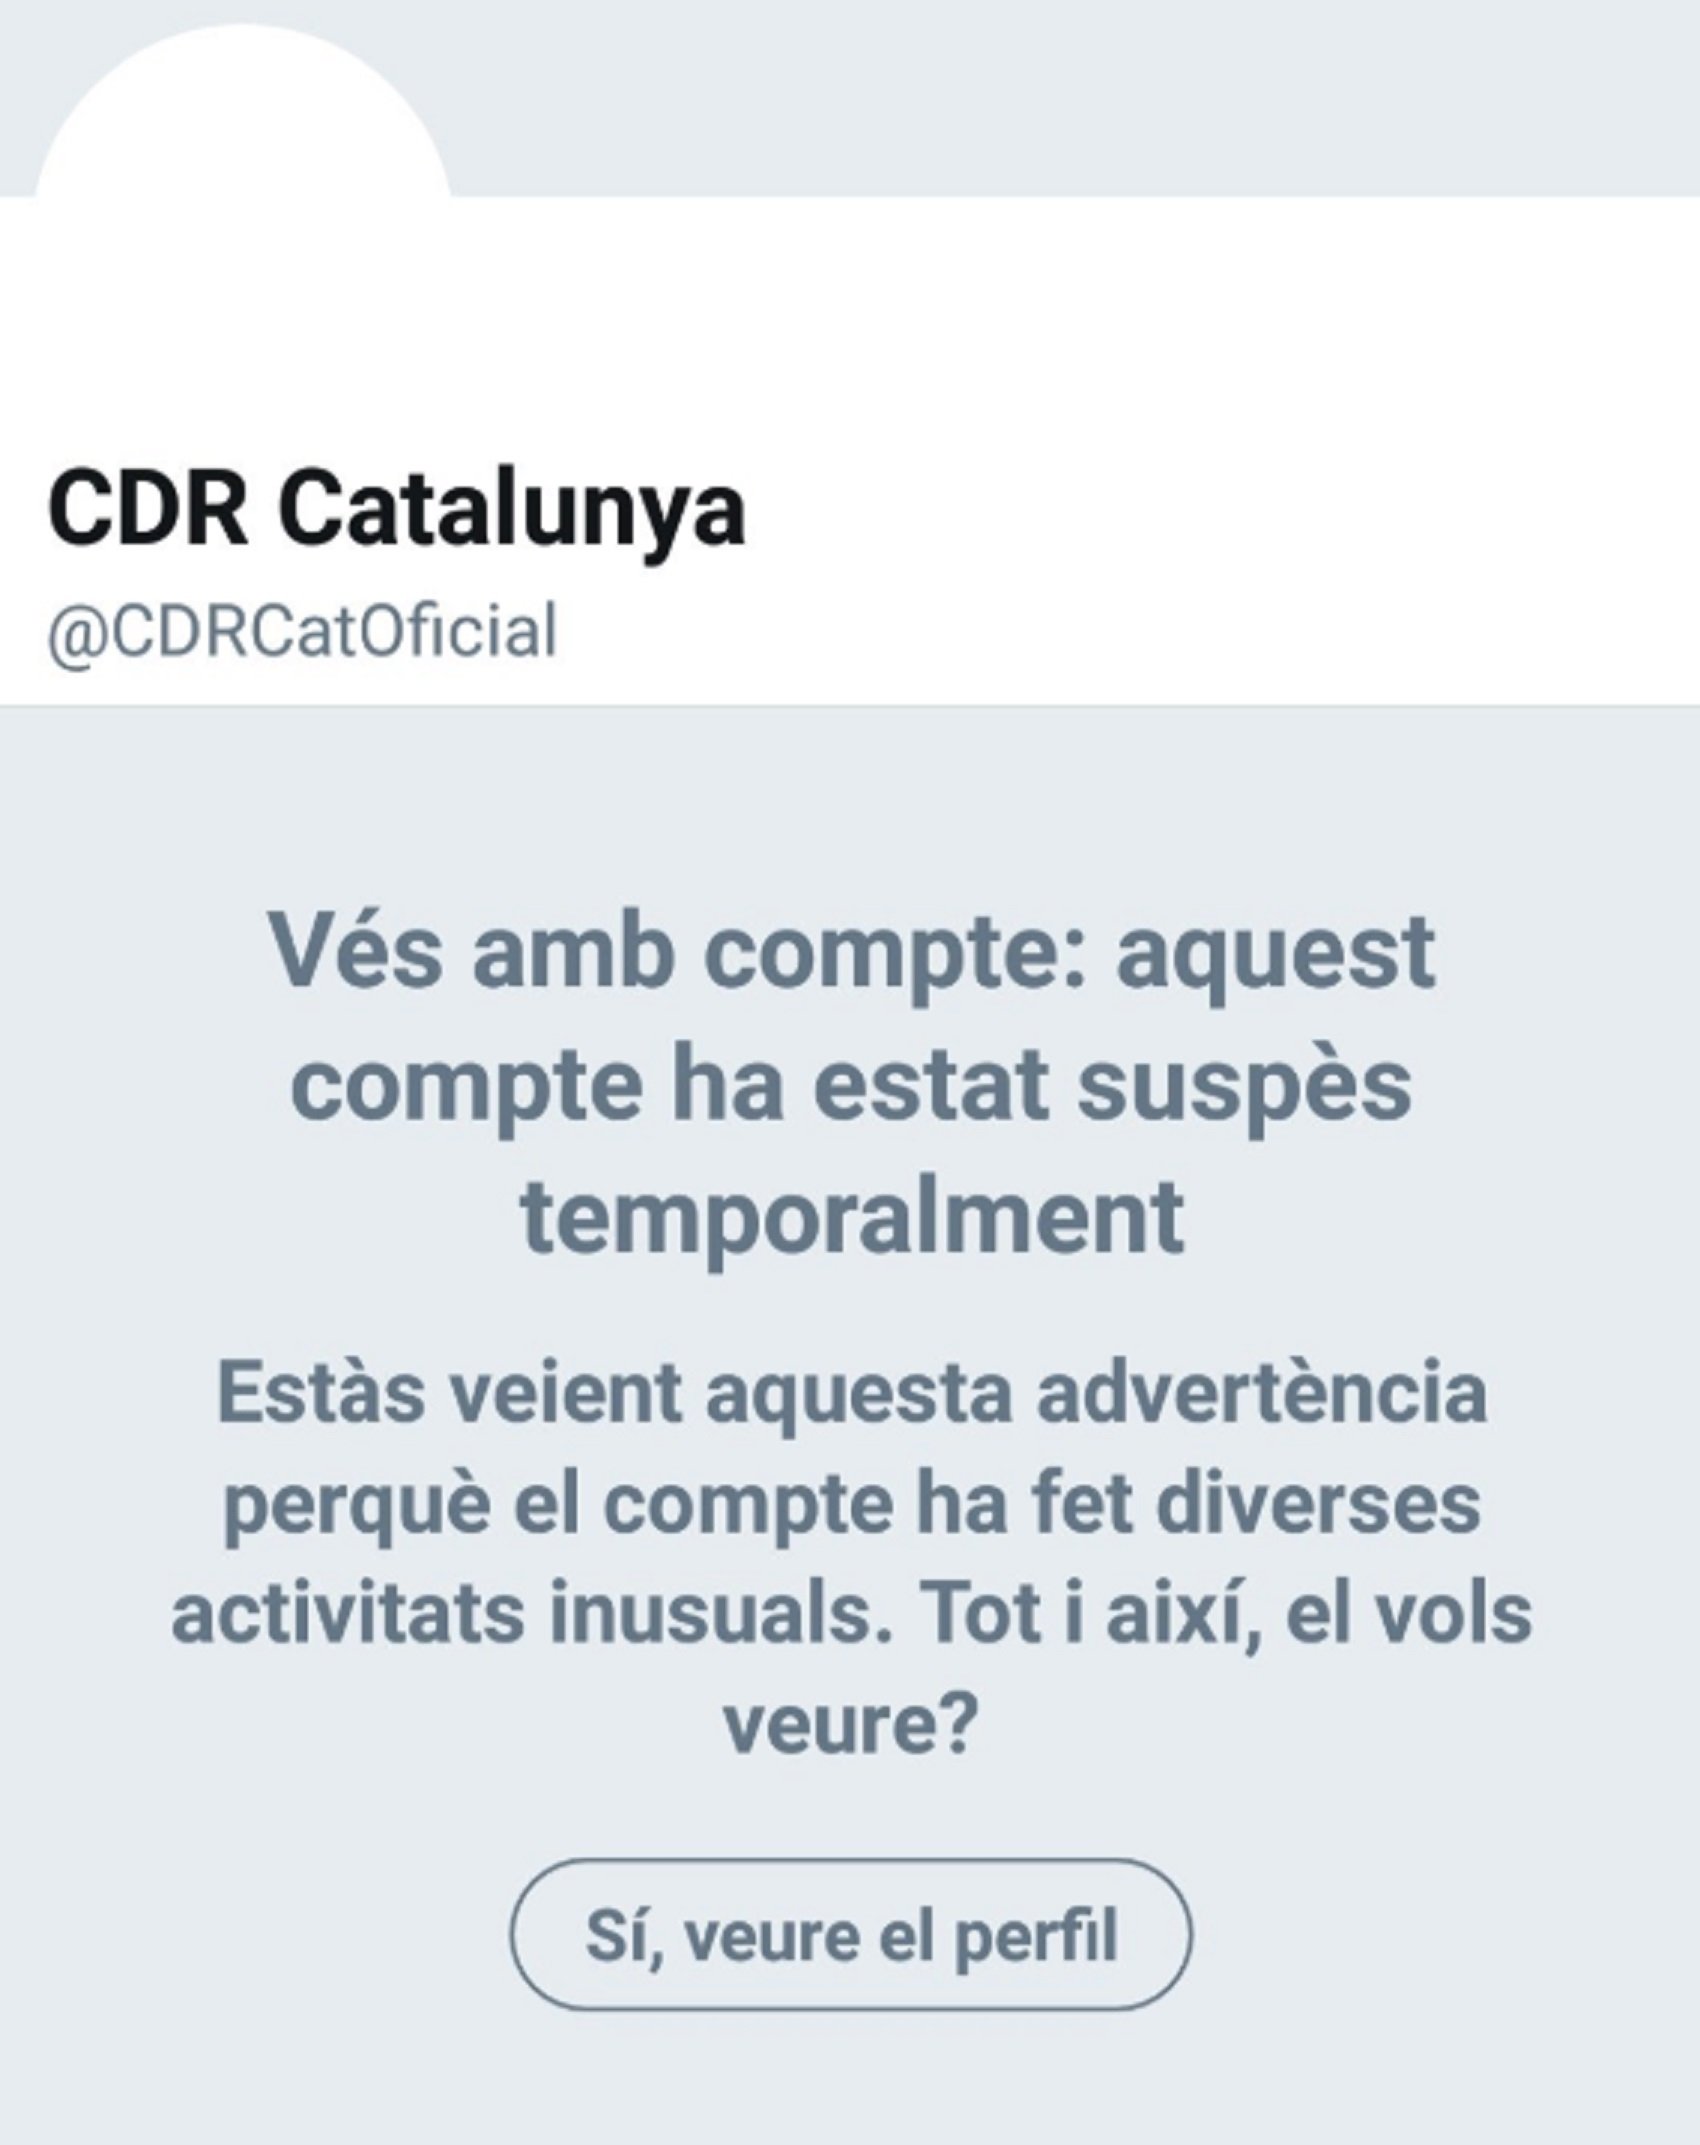 Se reactiva la cuenta oficial del CDR, que había sido restringida